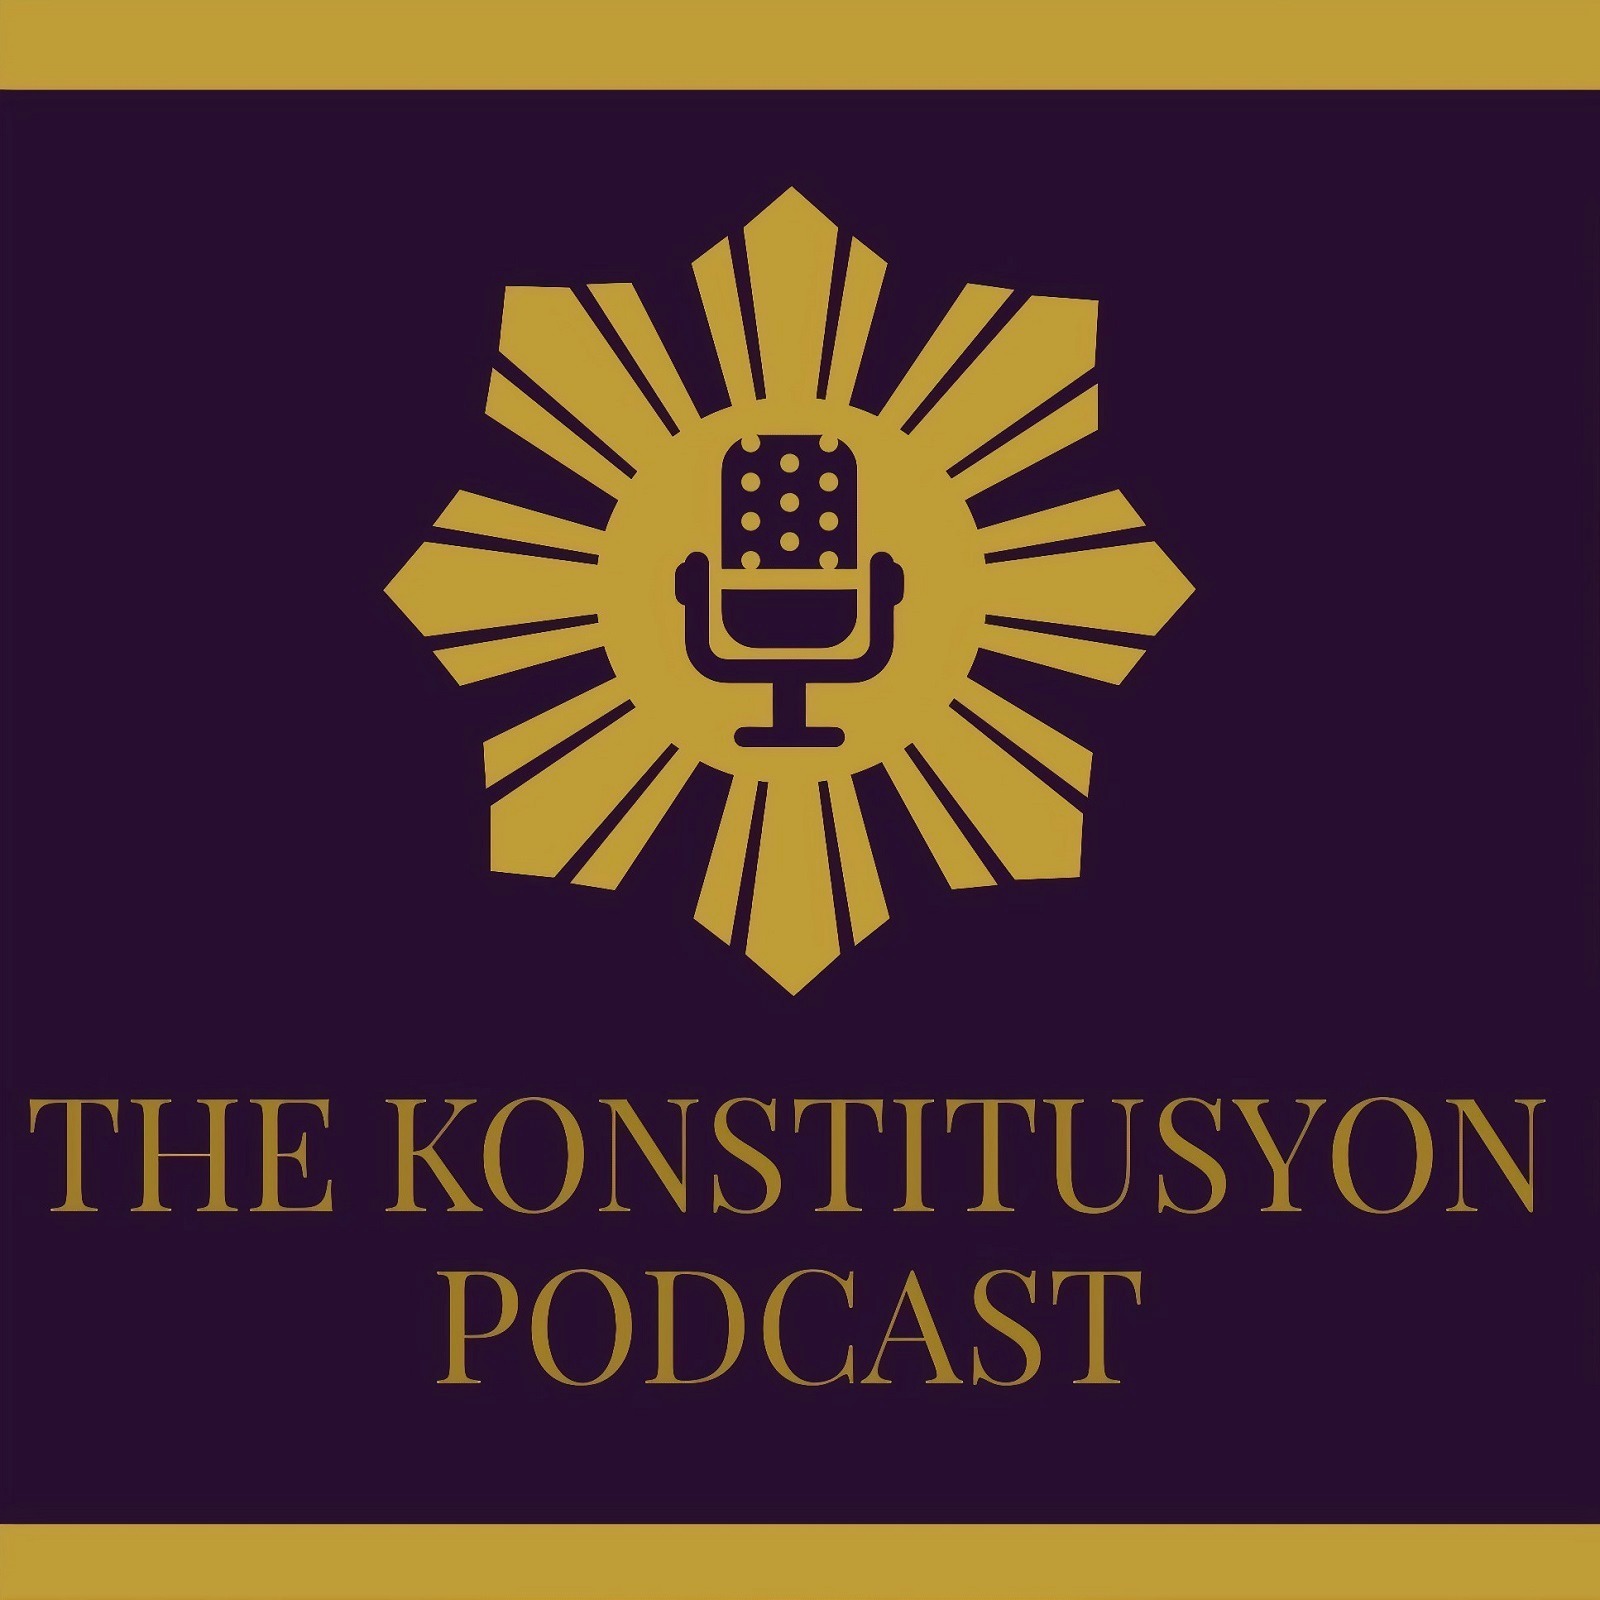 The Konstitusyon Podcast